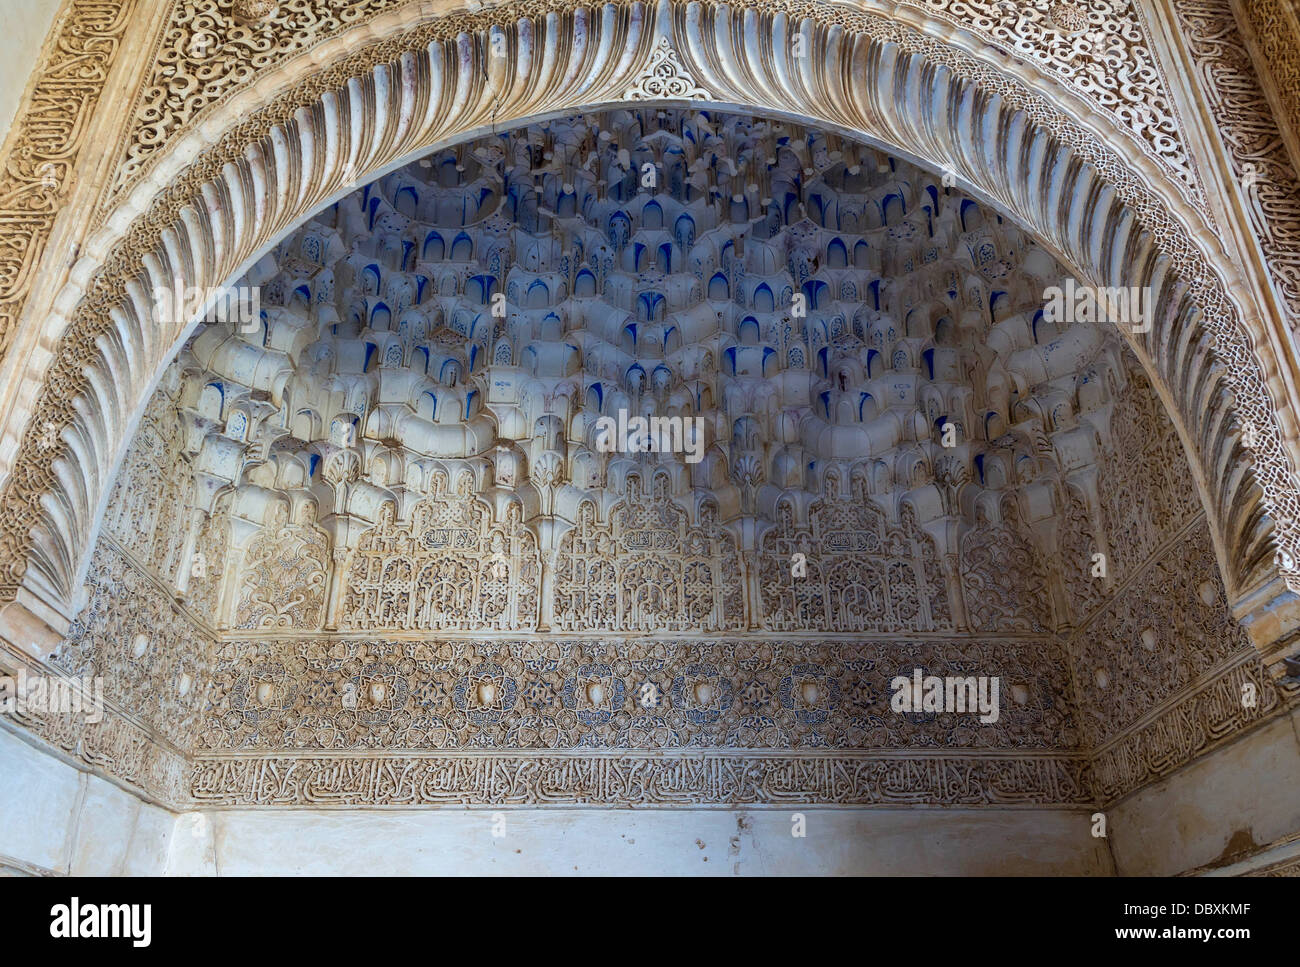 Détail du plafond d'une niche, palais Nasrides, Alhambra, Grenade, Espagne. Banque D'Images